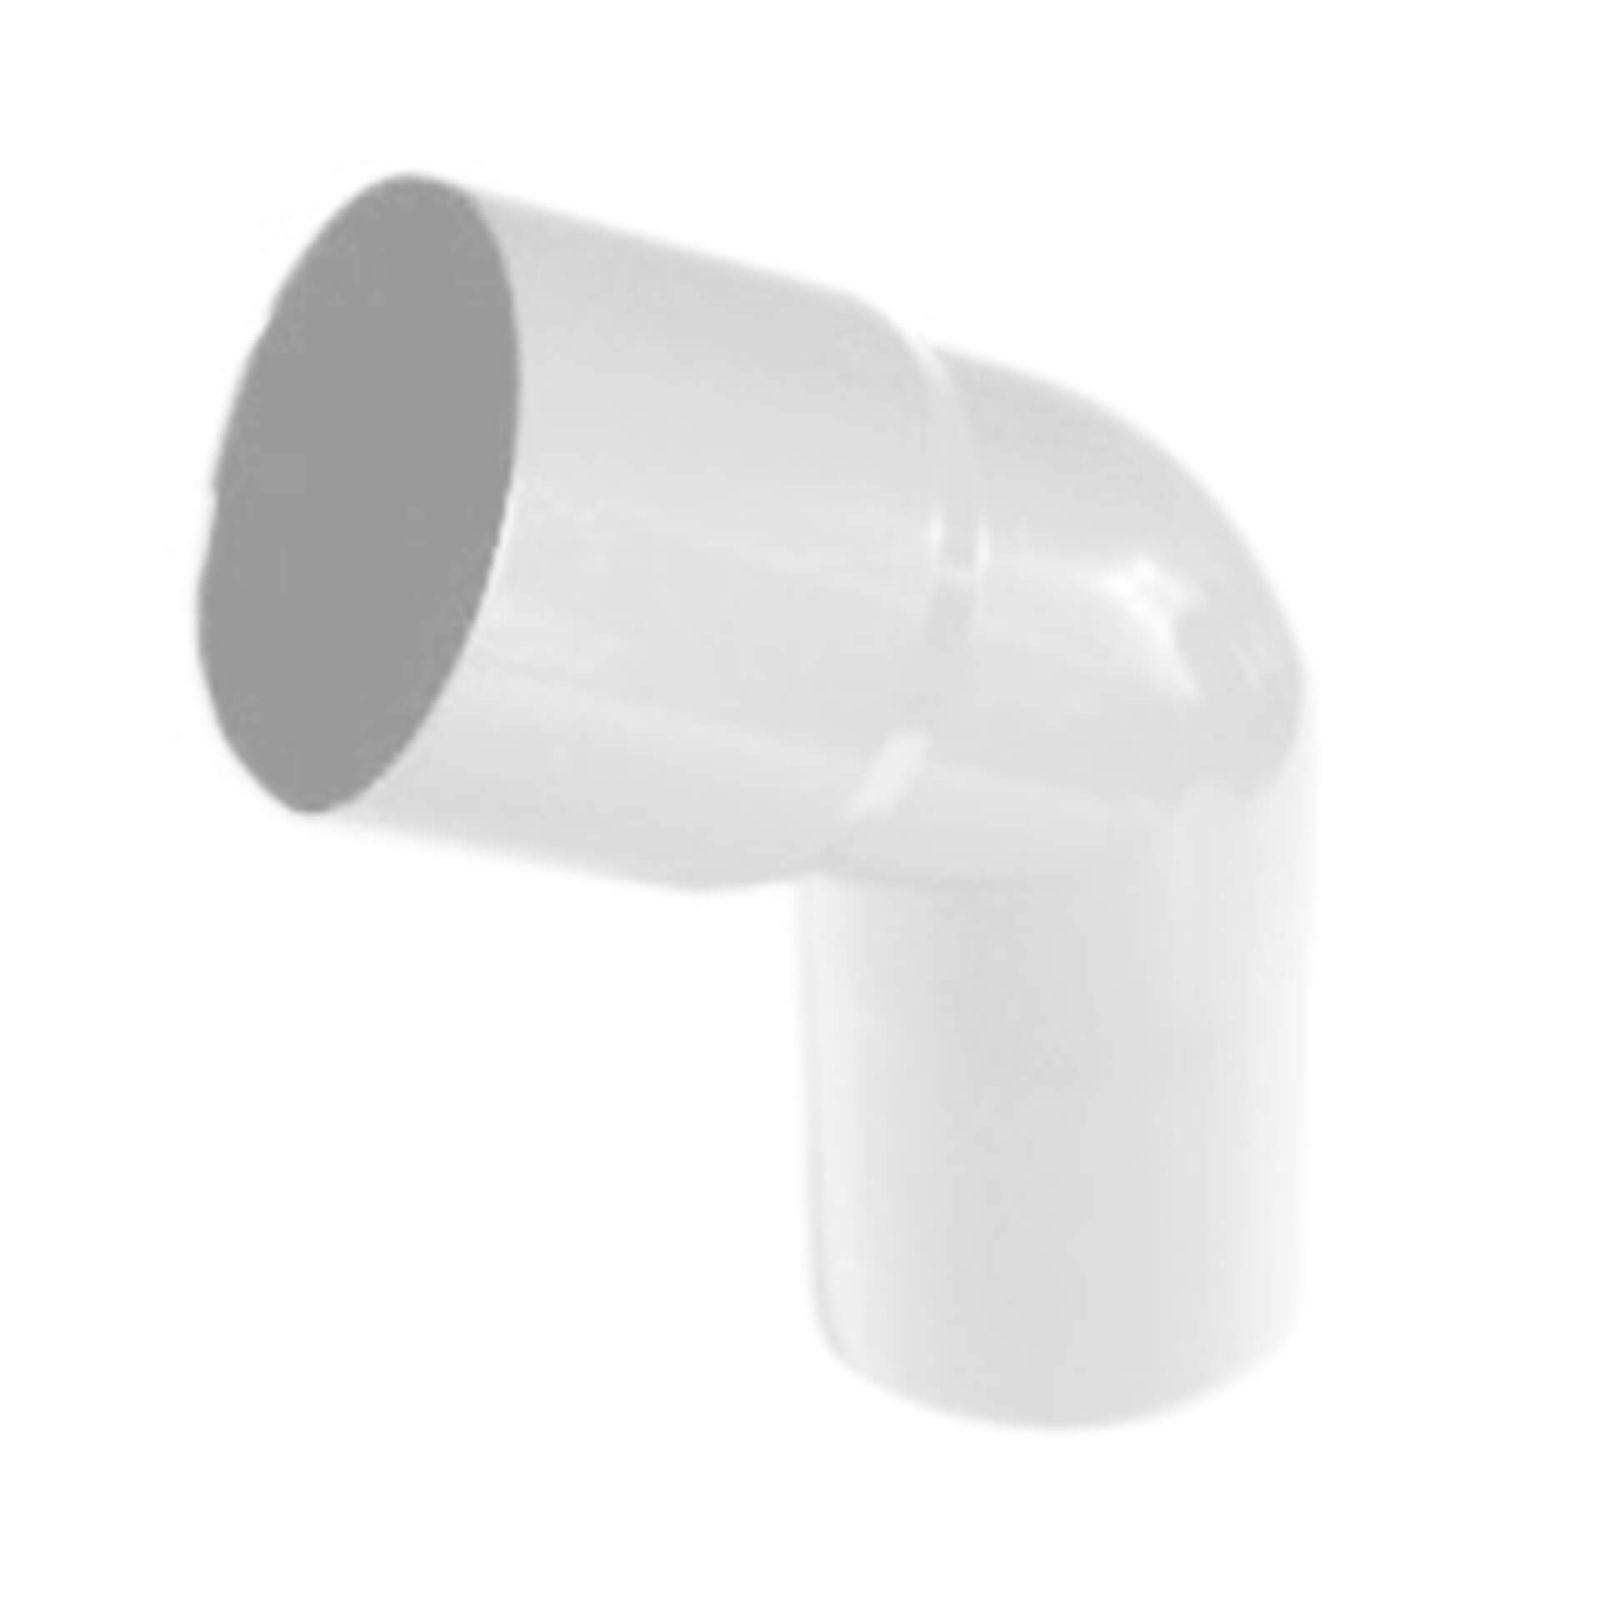 Kunststoff Dachrinnen Sparpaket 6 m | Ø 150/110 mm | Farbe Weiß #7